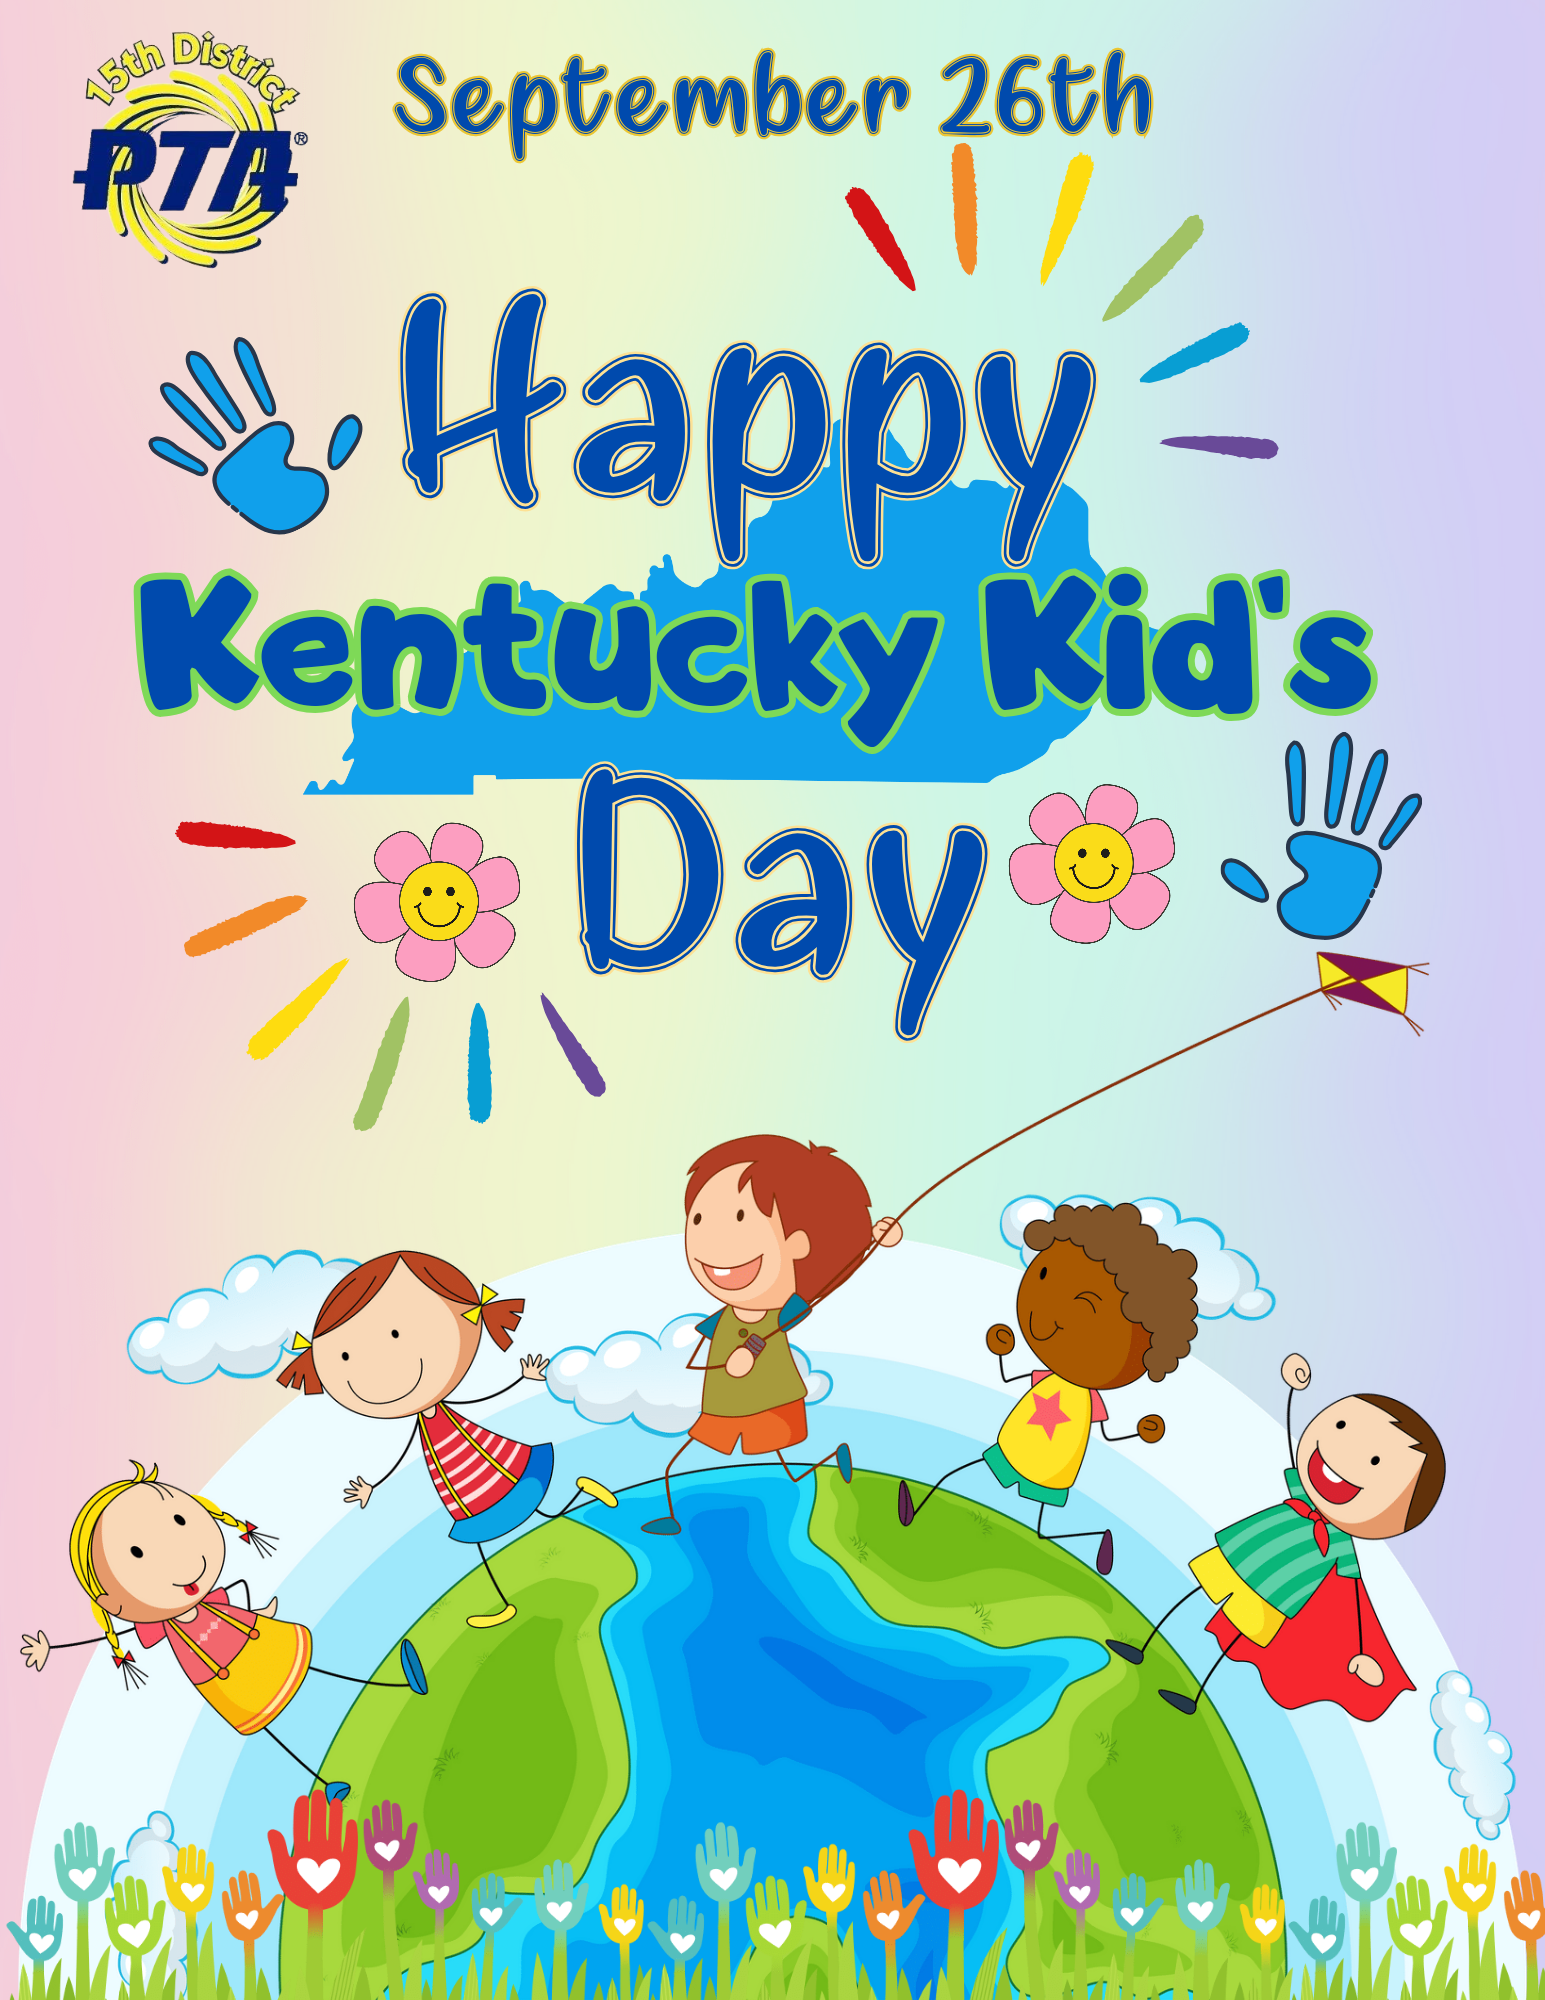 Kentucky Kids Day is September 26